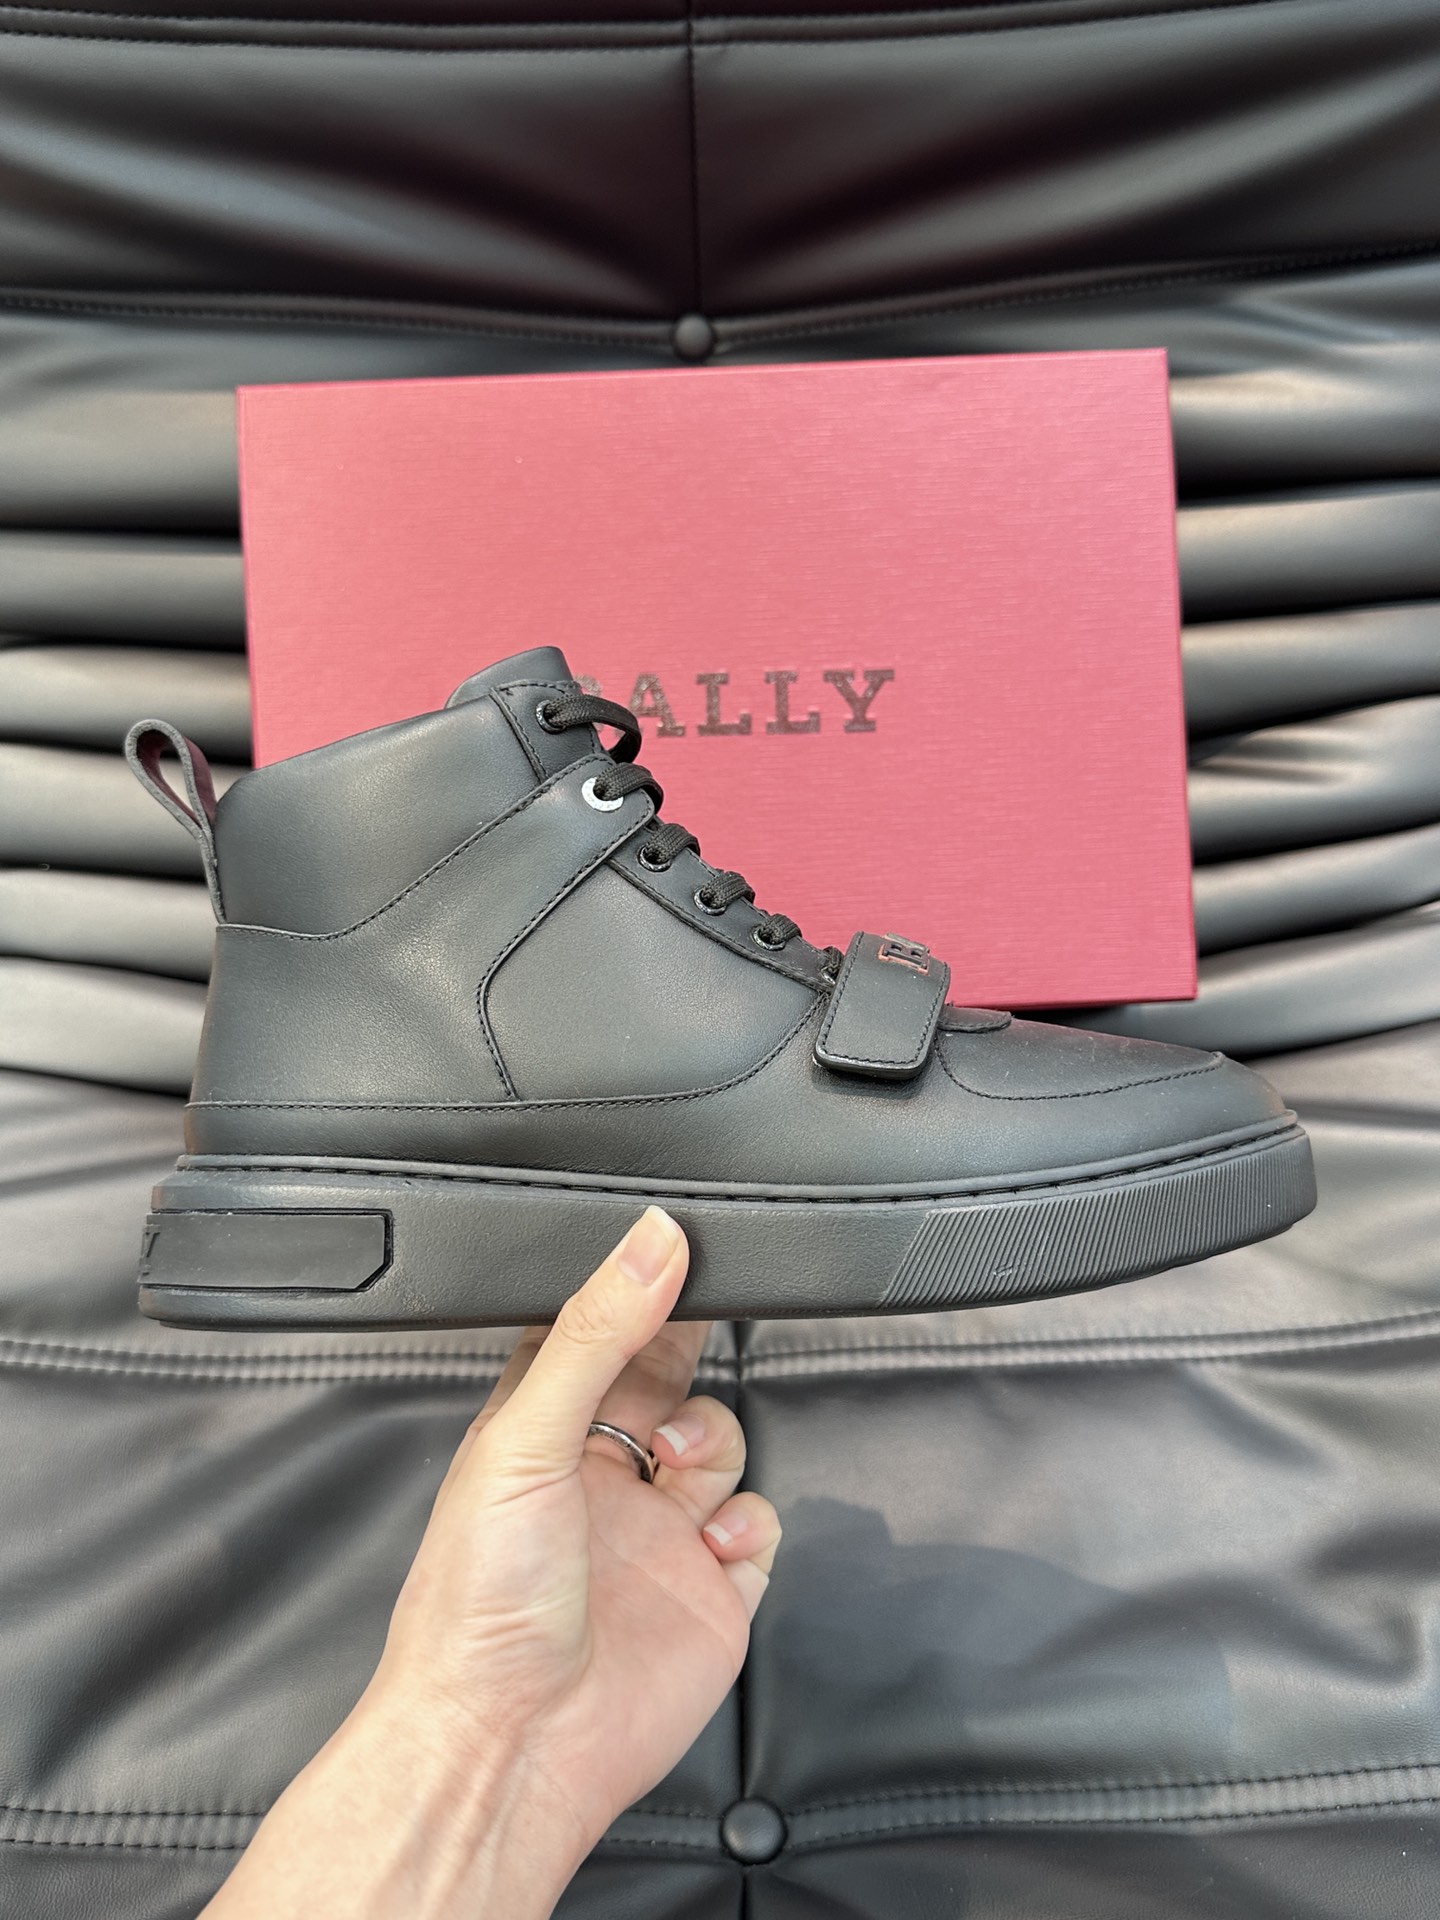 BALLY/巴利Merryk男士高帮皮革运动鞋这款由进口头层牛皮拼接制成鞋面饰有别具特色的Bally字母